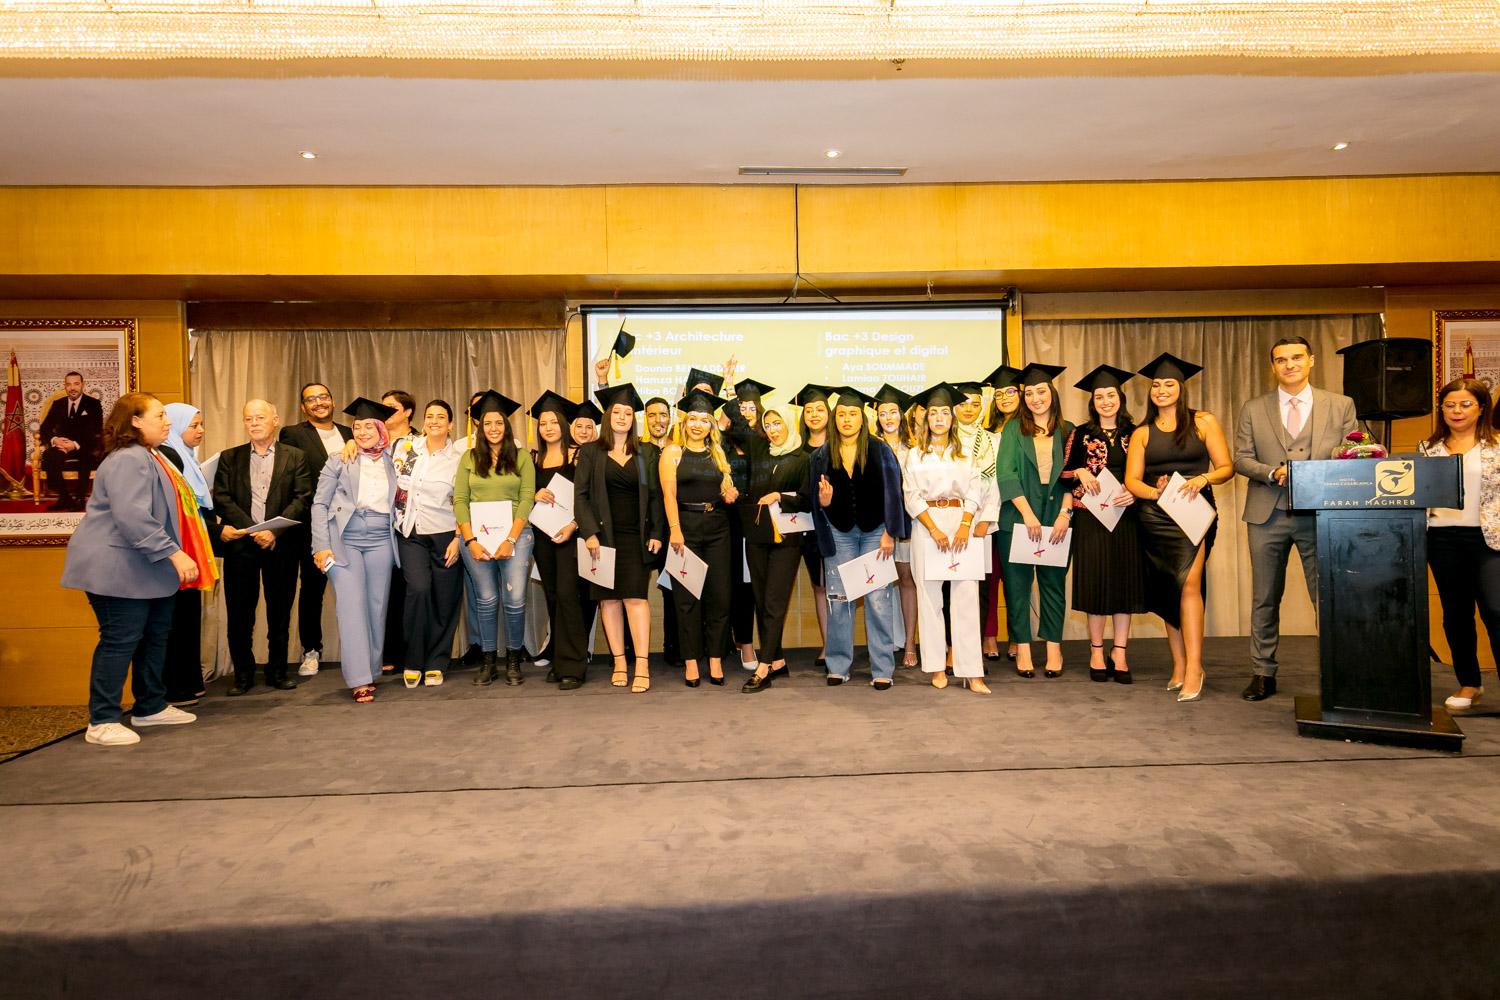 ceremonie artcom remise des diplomes